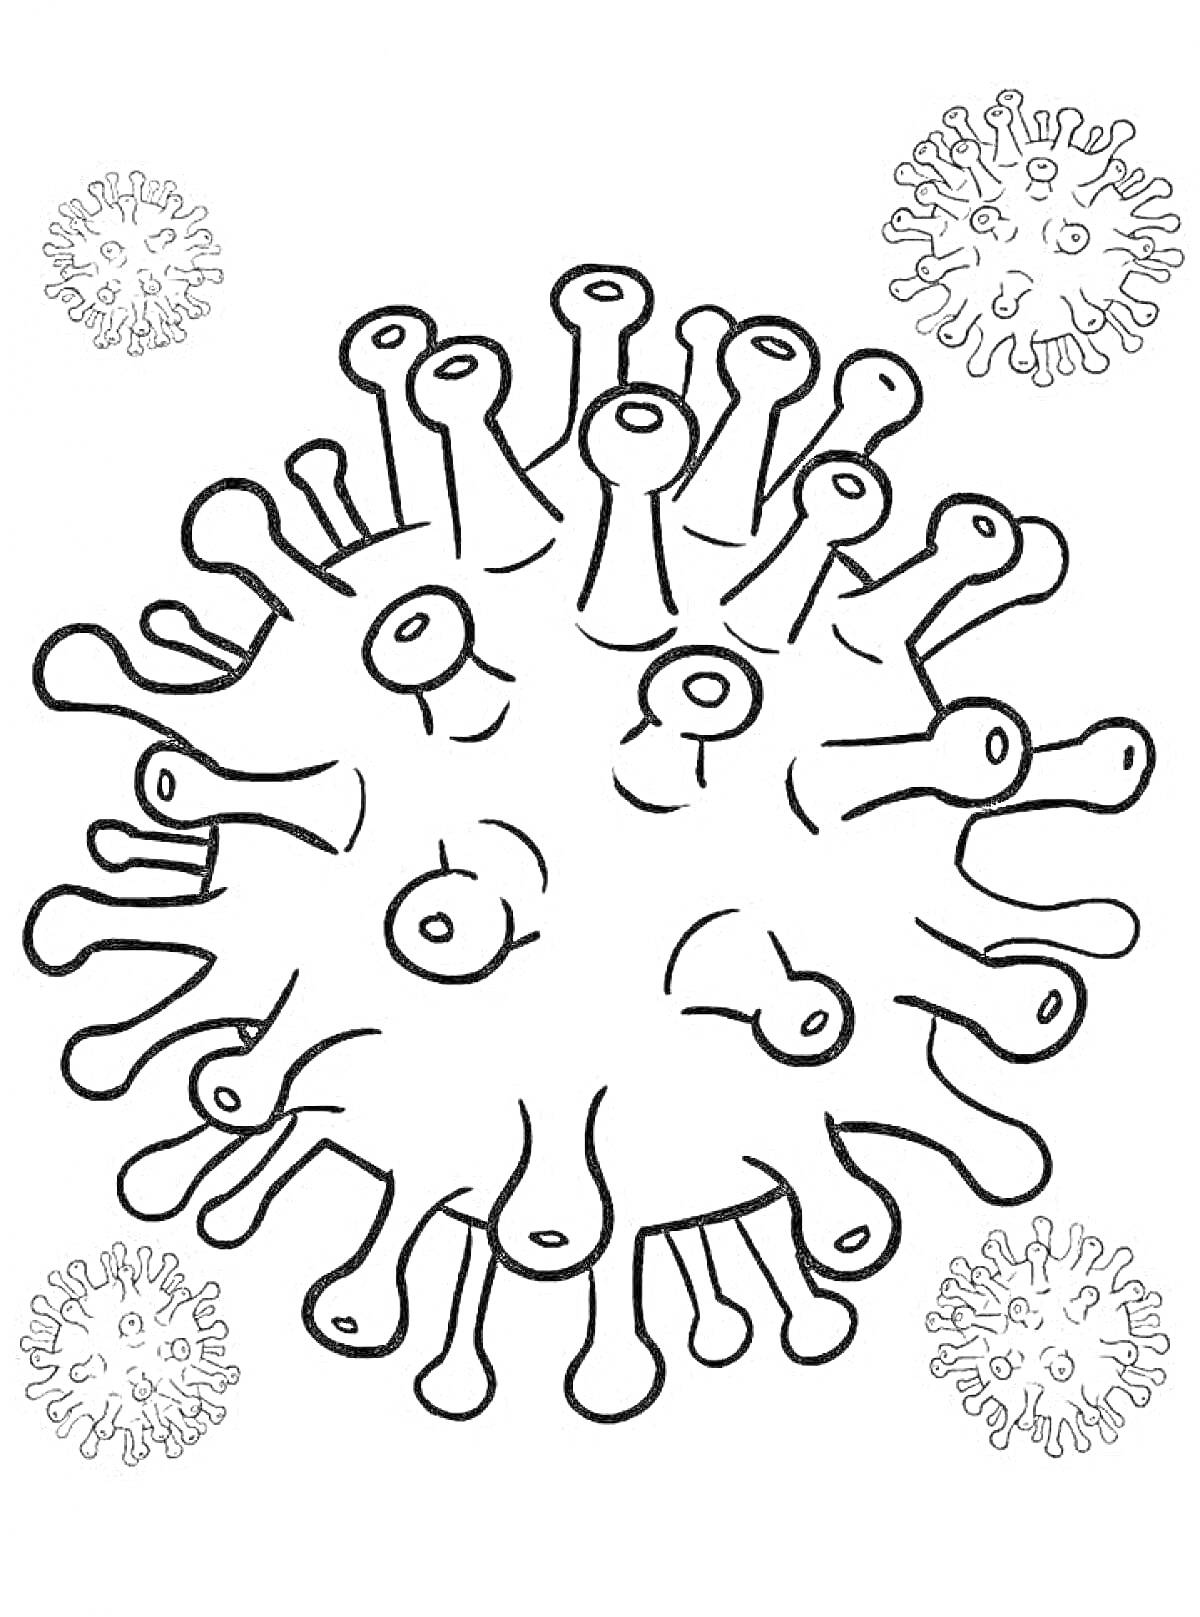 Раскраска Большой вирус с четырьмя маленькими вирусами